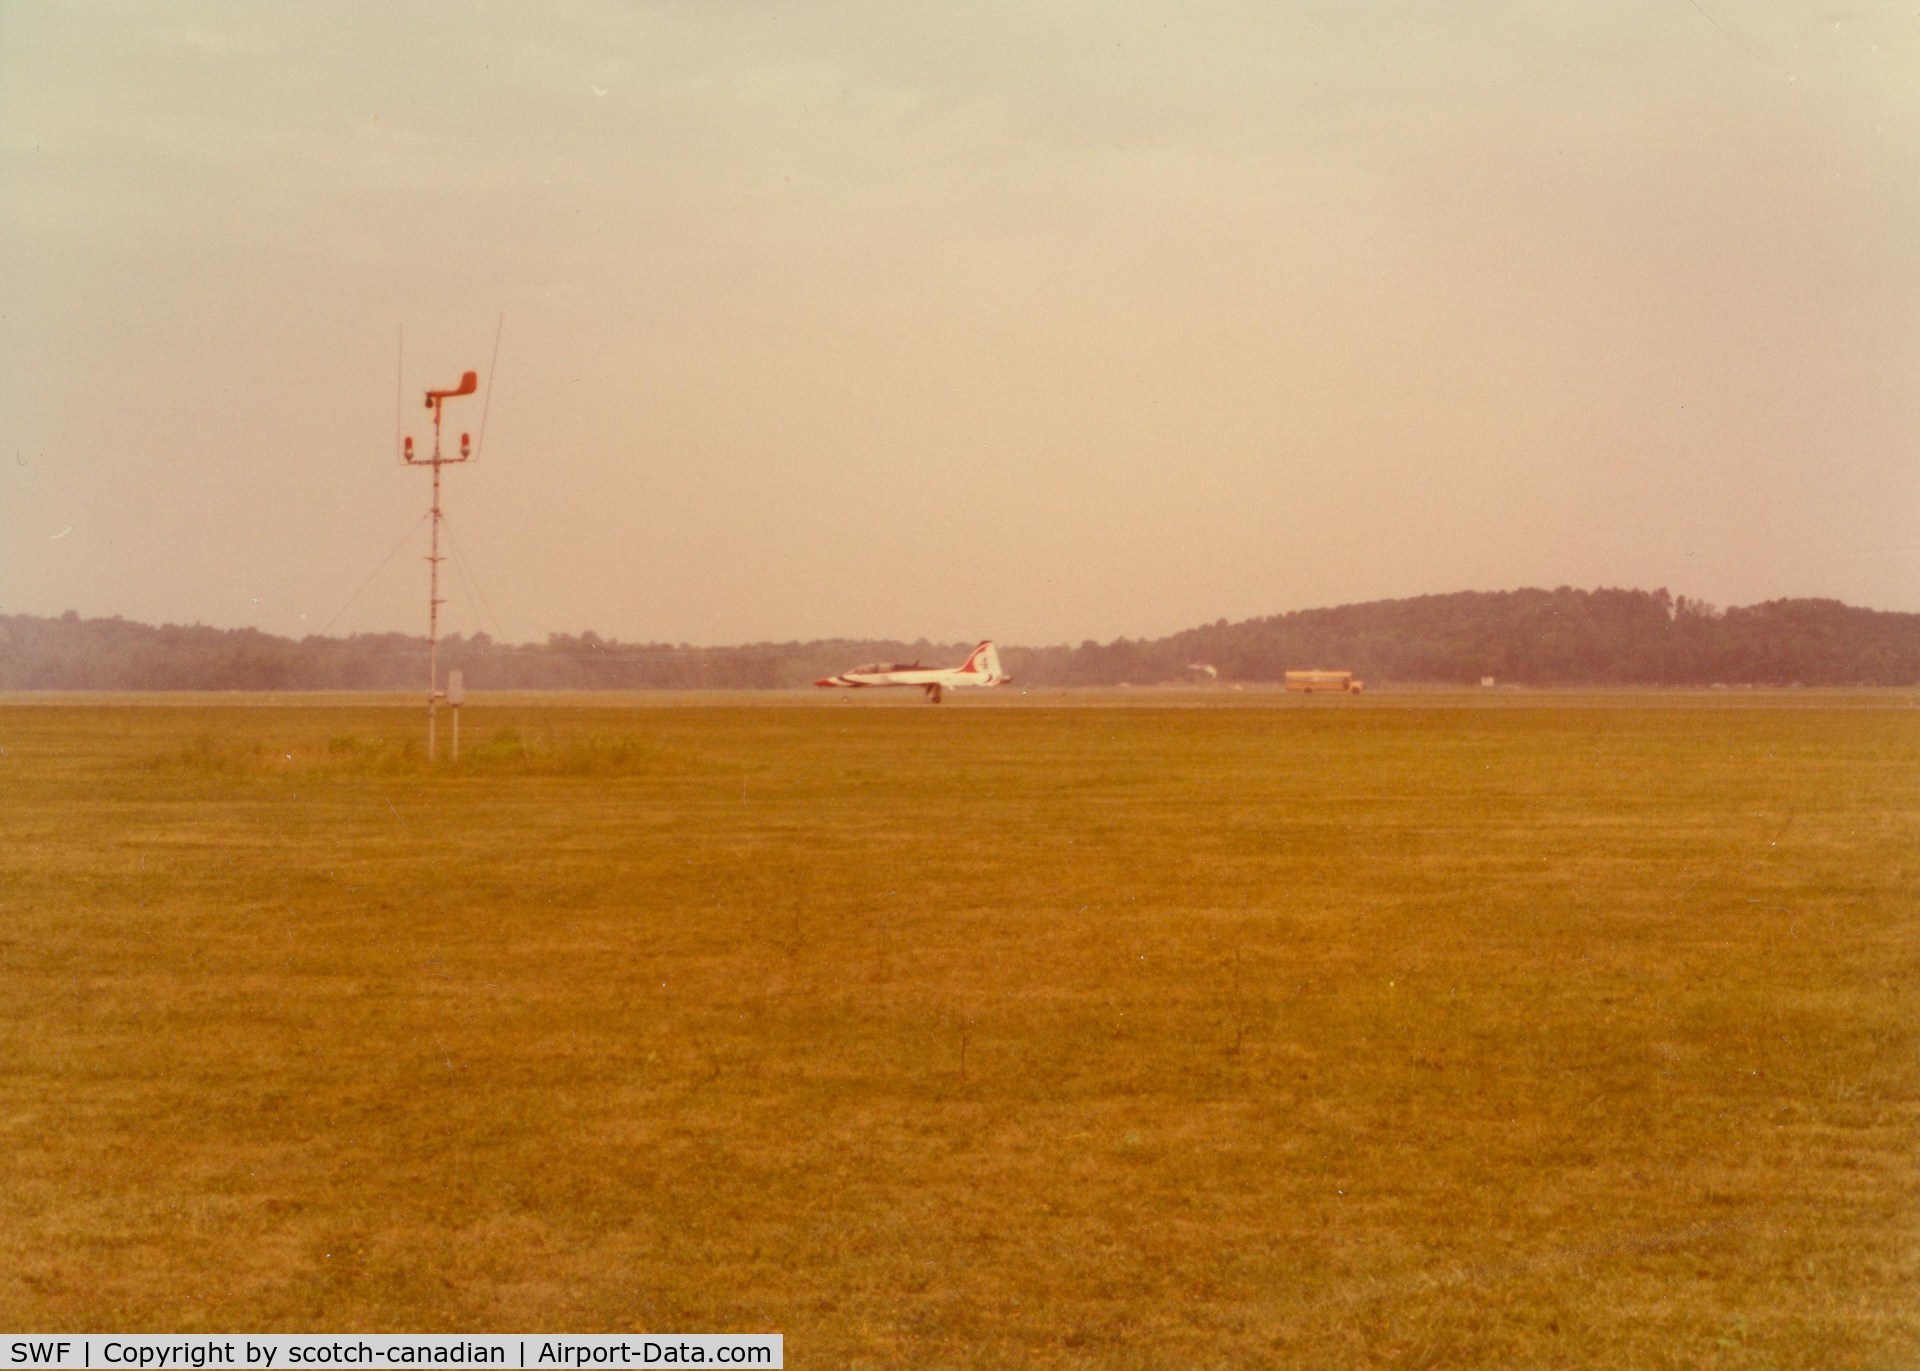 Stewart International Airport (SWF) - Thunderbird 4 at Stewart International Airport, Newburgh, NY